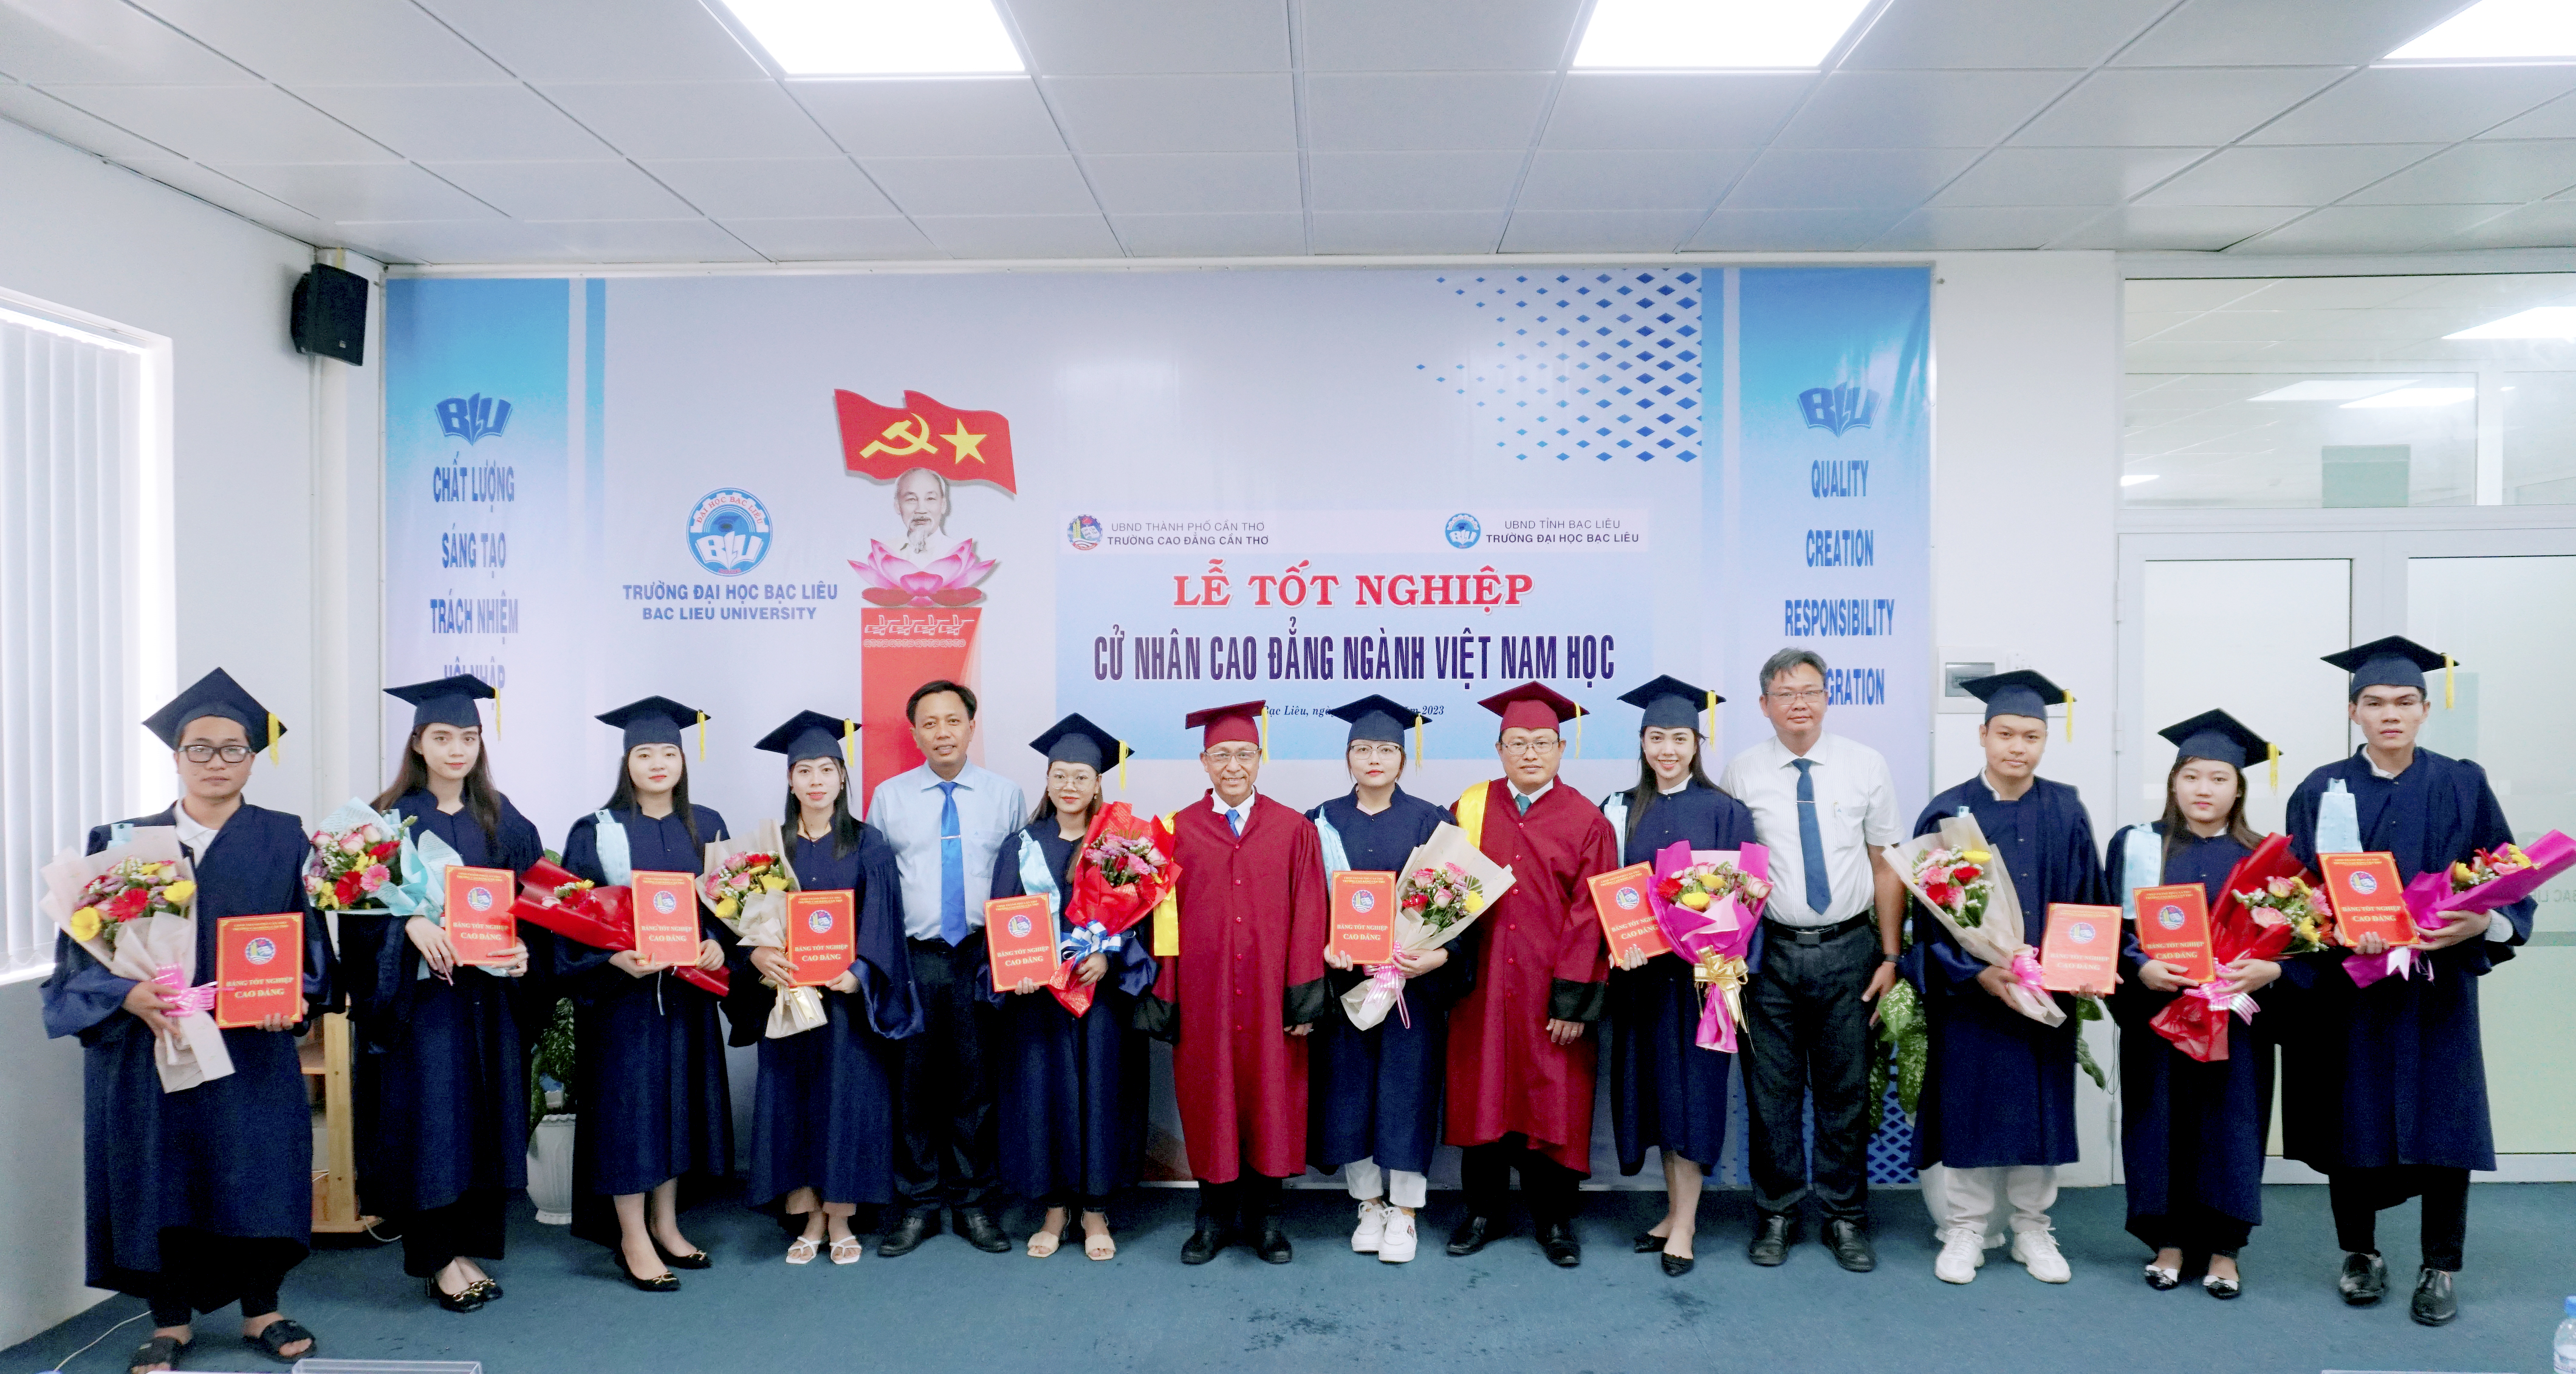 Trao bằng tốt nghiệp cử nhân Ngành Việt Nam học